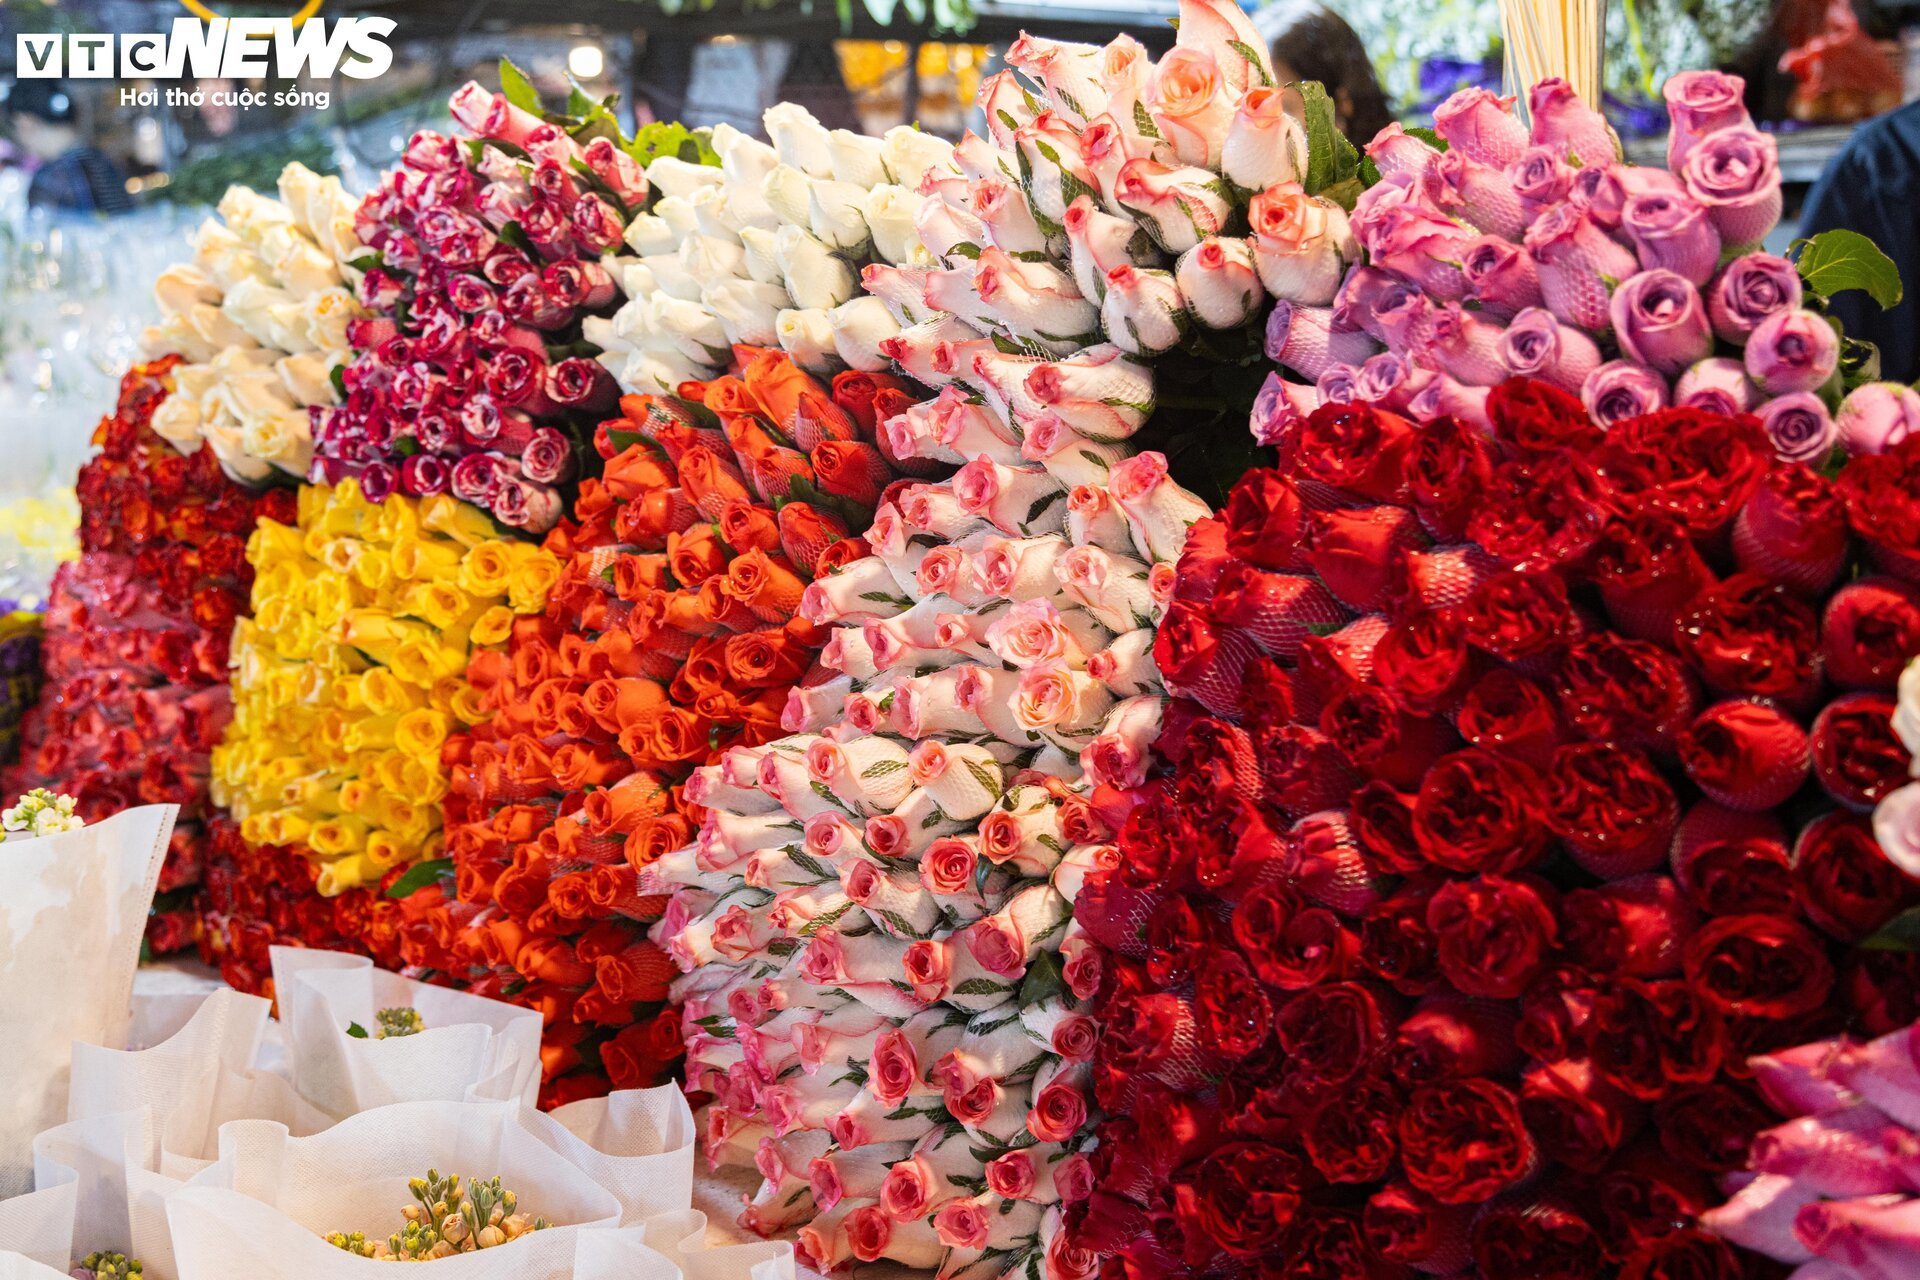 Chợ hoa tươi lớn nhất Hà Nội nhộn nhịp suốt đêm trước ngày 8/3 - Ảnh 5.